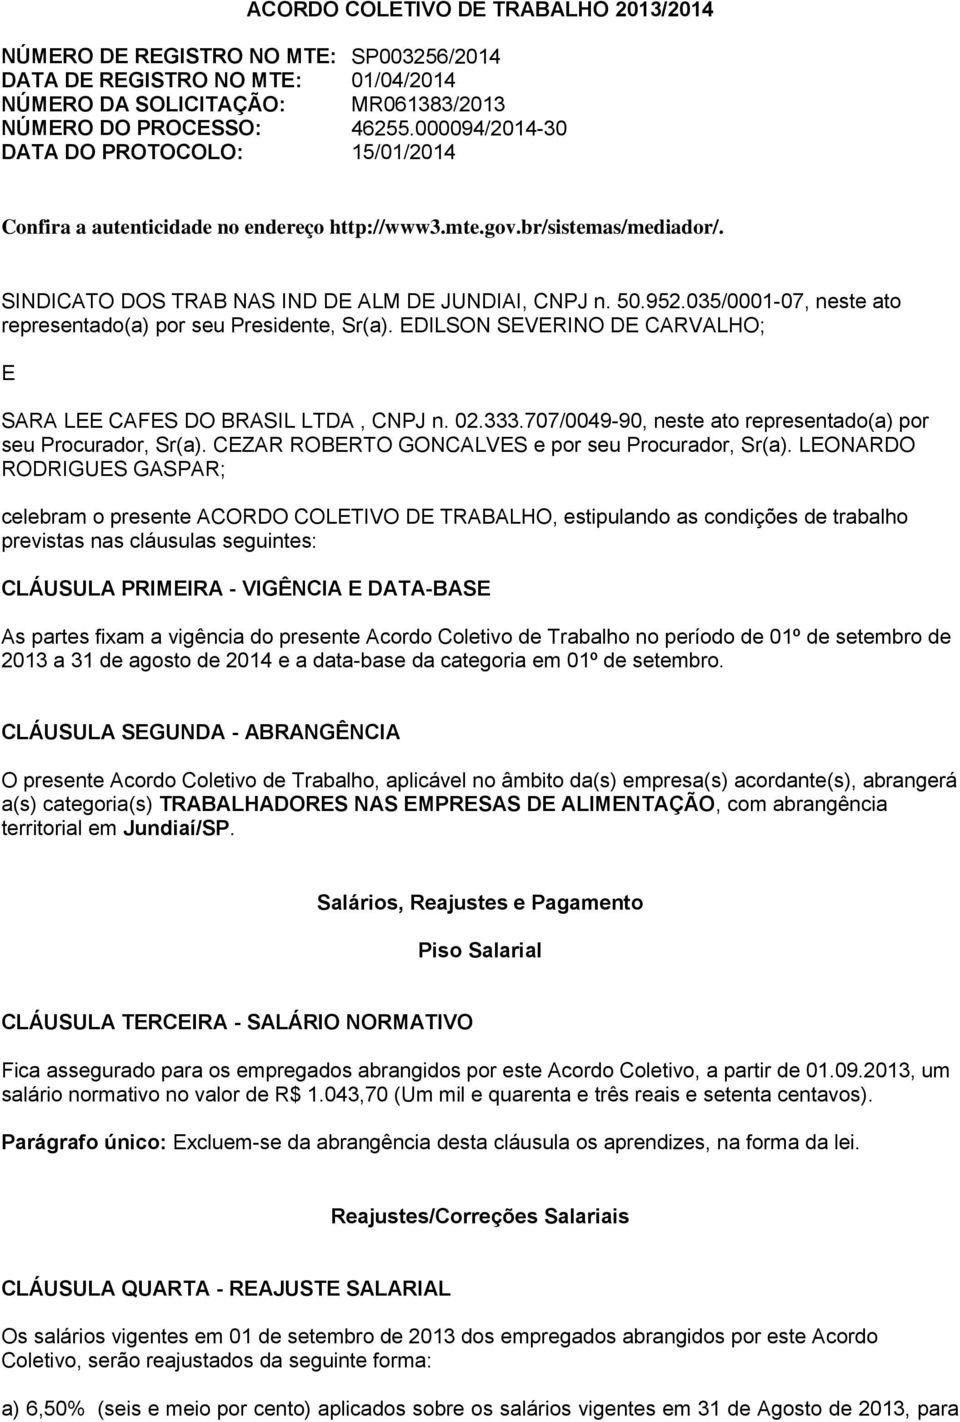 035/0001-07, neste ato representado(a) por seu Presidente, Sr(a). EDILSON SEVERINO DE CARVALHO; E SARA LEE CAFES DO BRASIL LTDA, CNPJ n. 02.333.